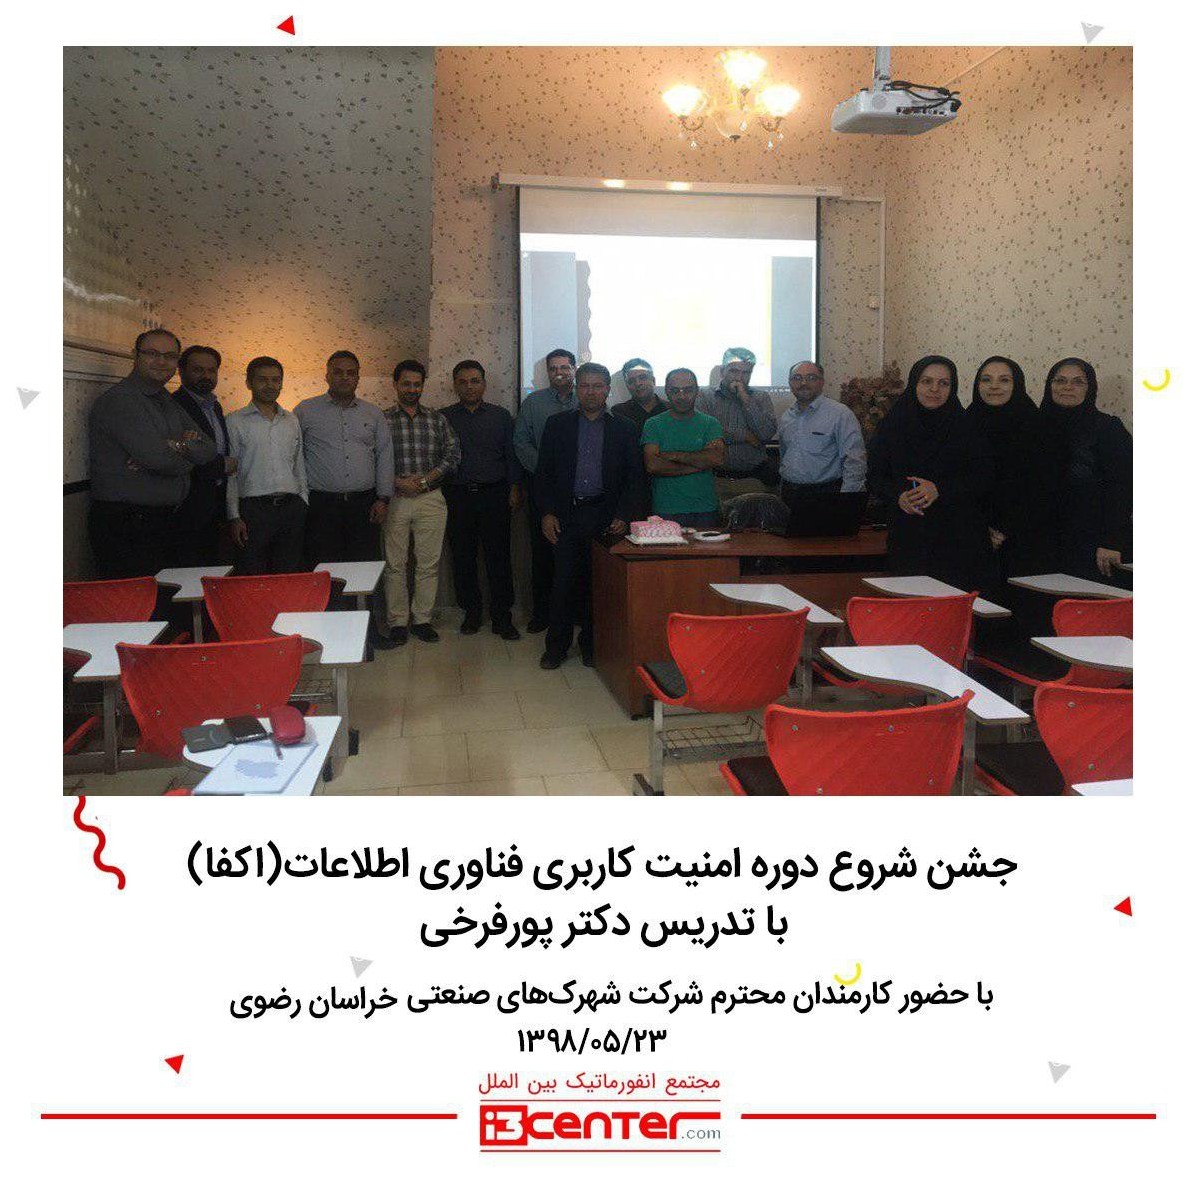 جشن شروع دوره امنیت کاربری فناوری اطلاعات (اکفا)  با تدریس دکتر عباس پورفرخی